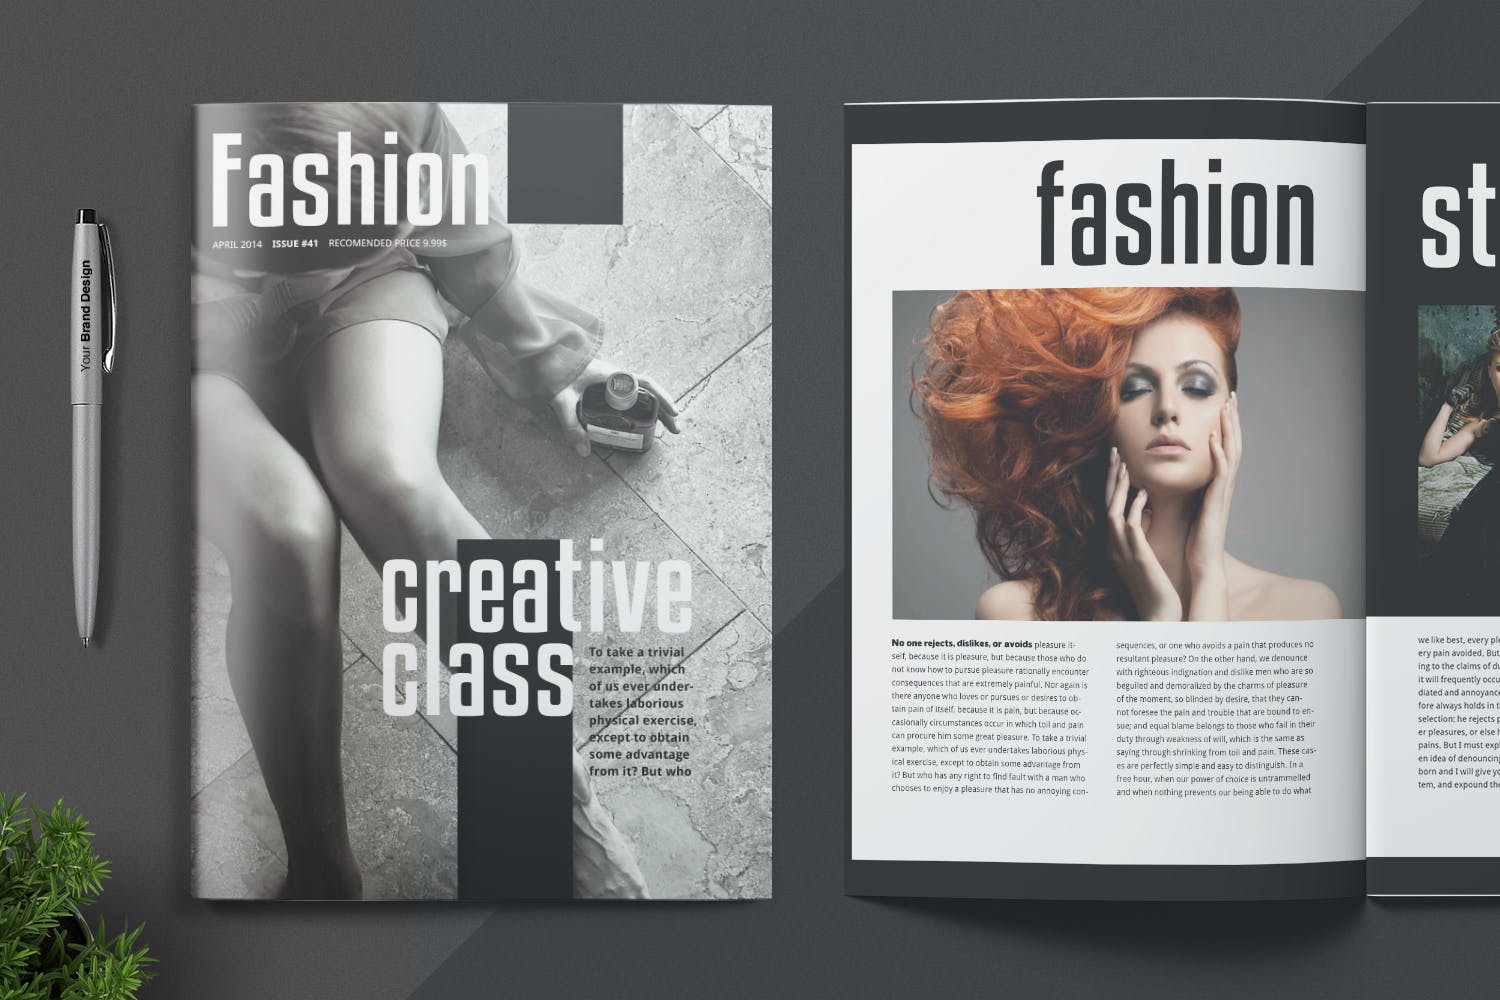 时尚/摄影/服装主题16图库精选杂志设计INDD模板 Magazine Template插图